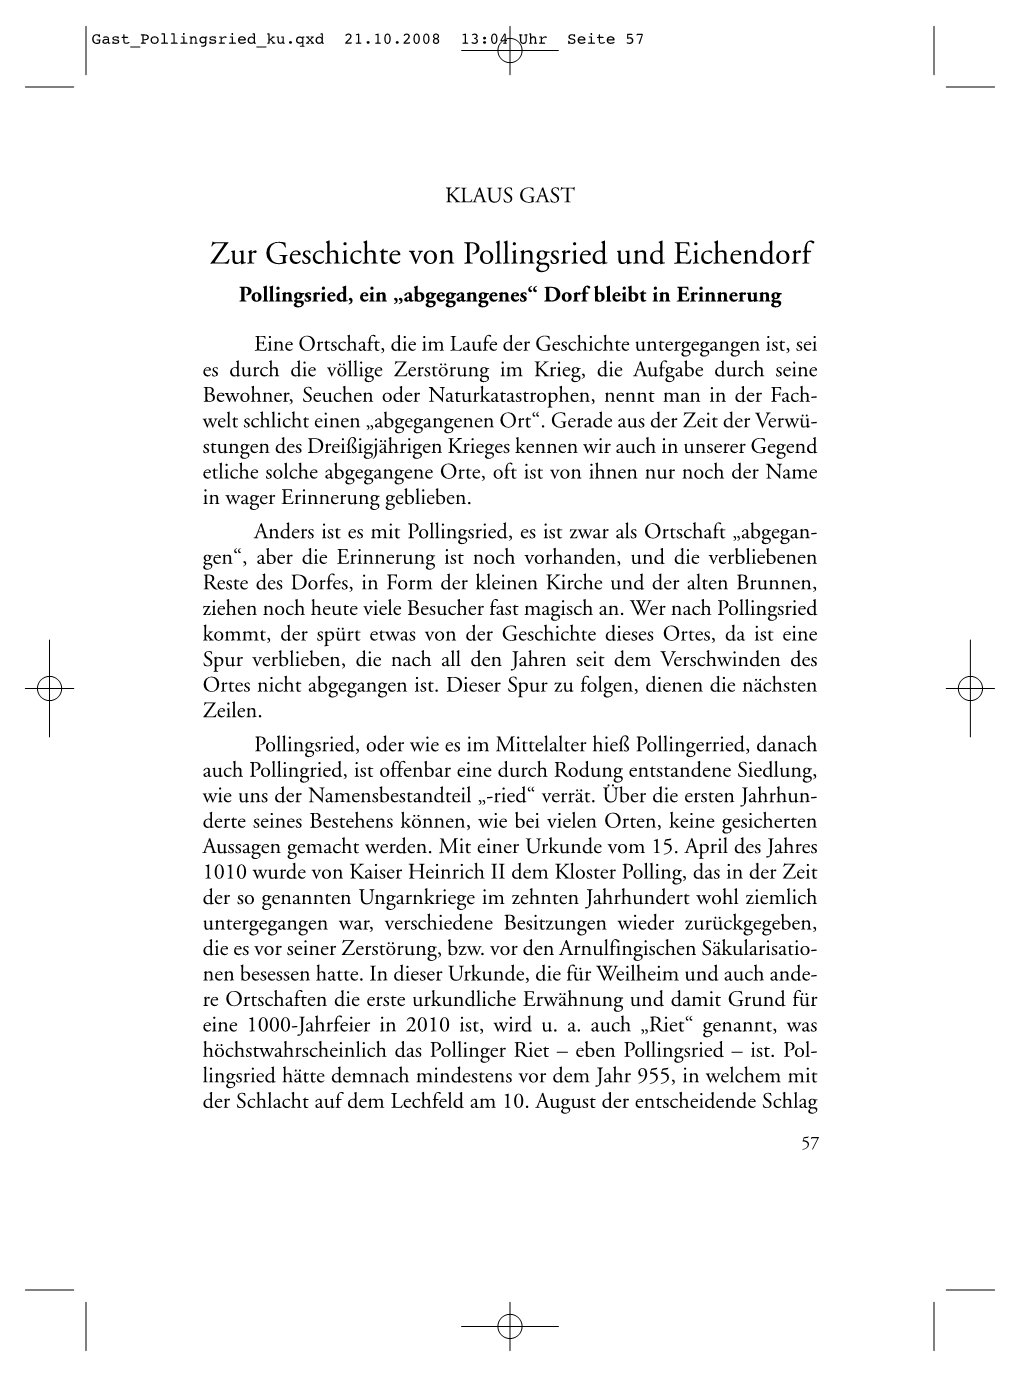 Zur Geschichte Von Pollingsried Und Eichendorf Pollingsried, Ein „Abgegangenes“ Dorf Bleibt in Erinnerung